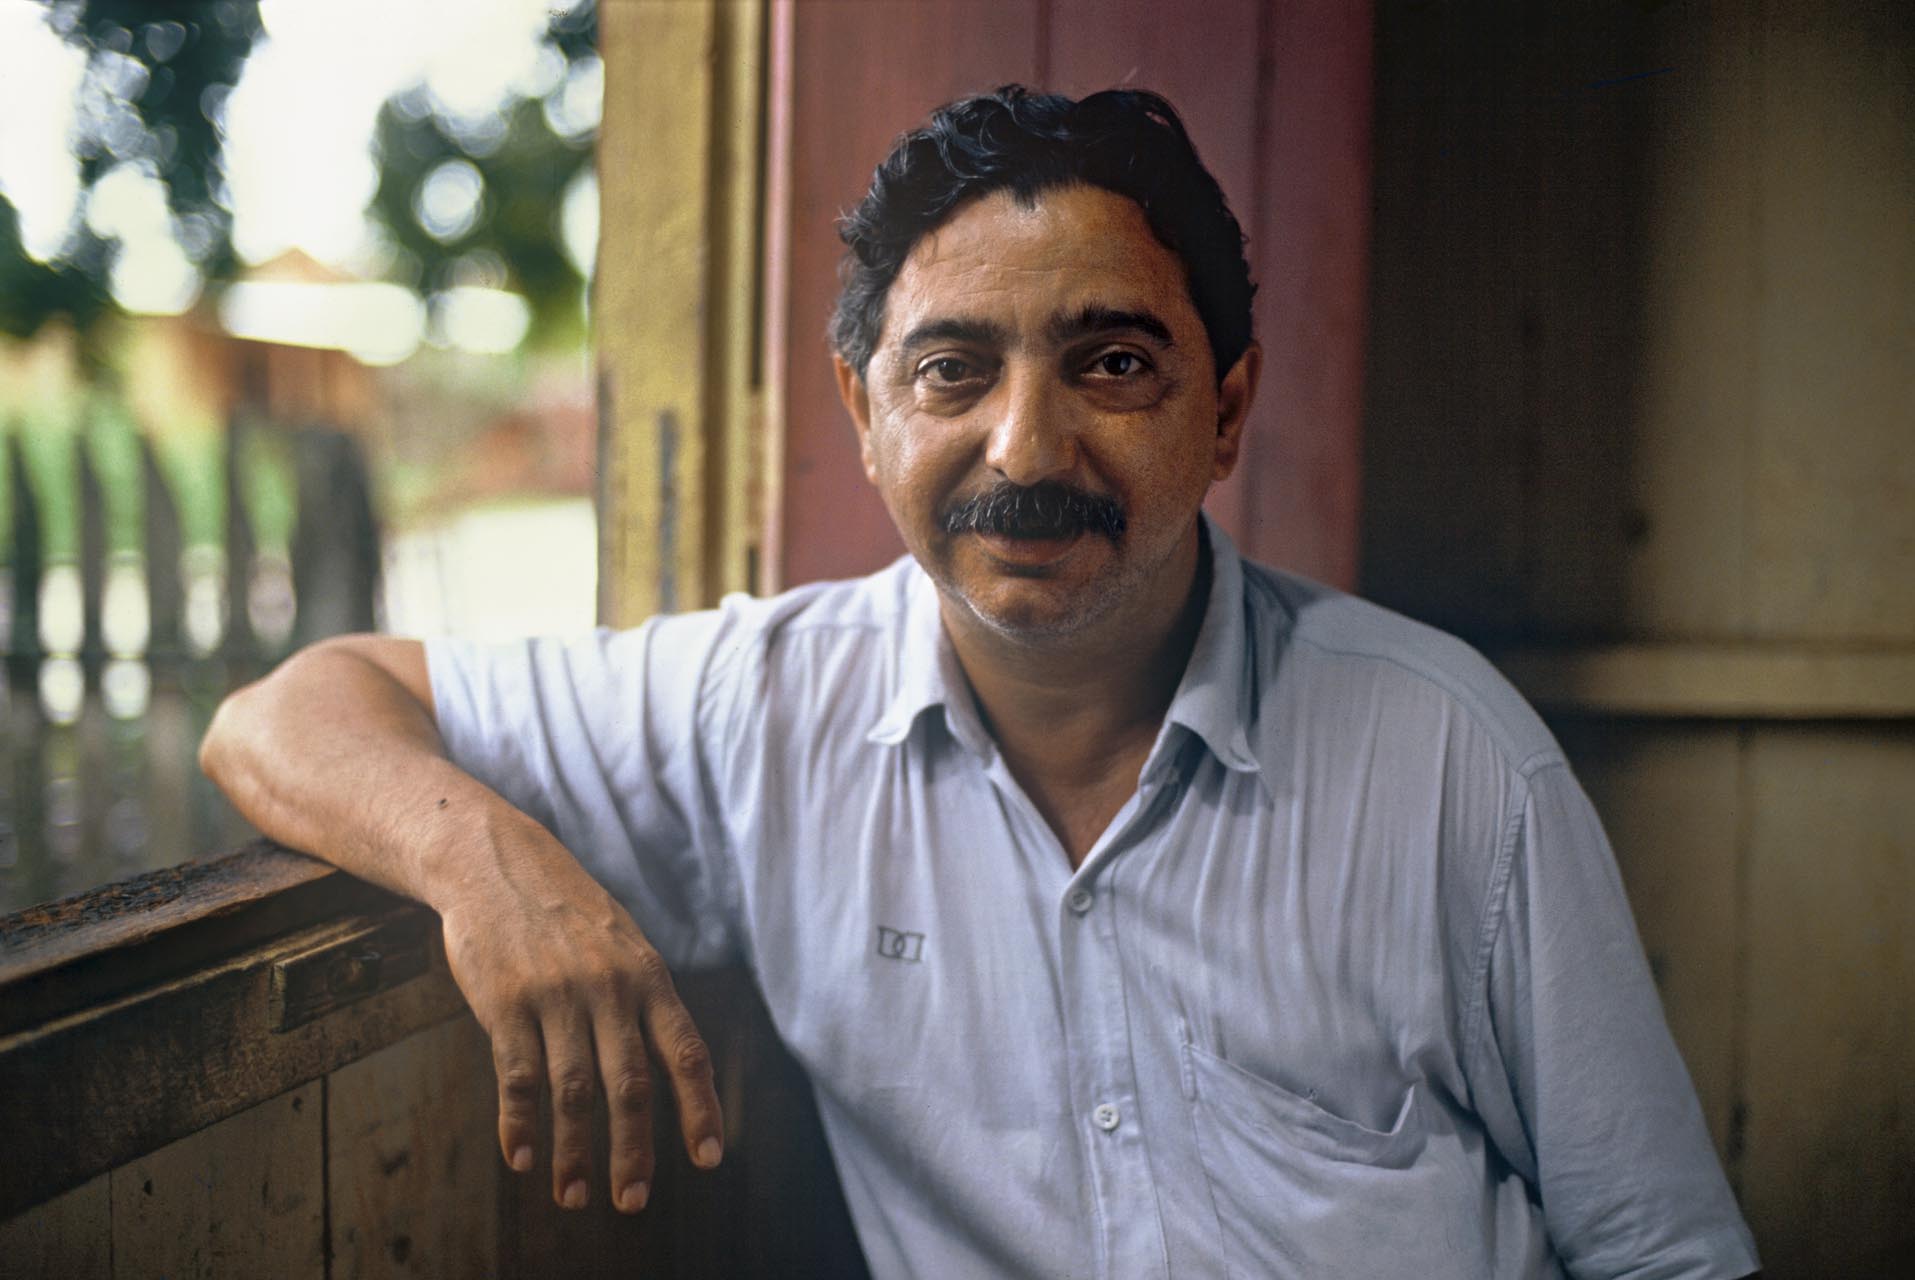 Chico Mendes, líder dos seringueiros durante a década de 1980